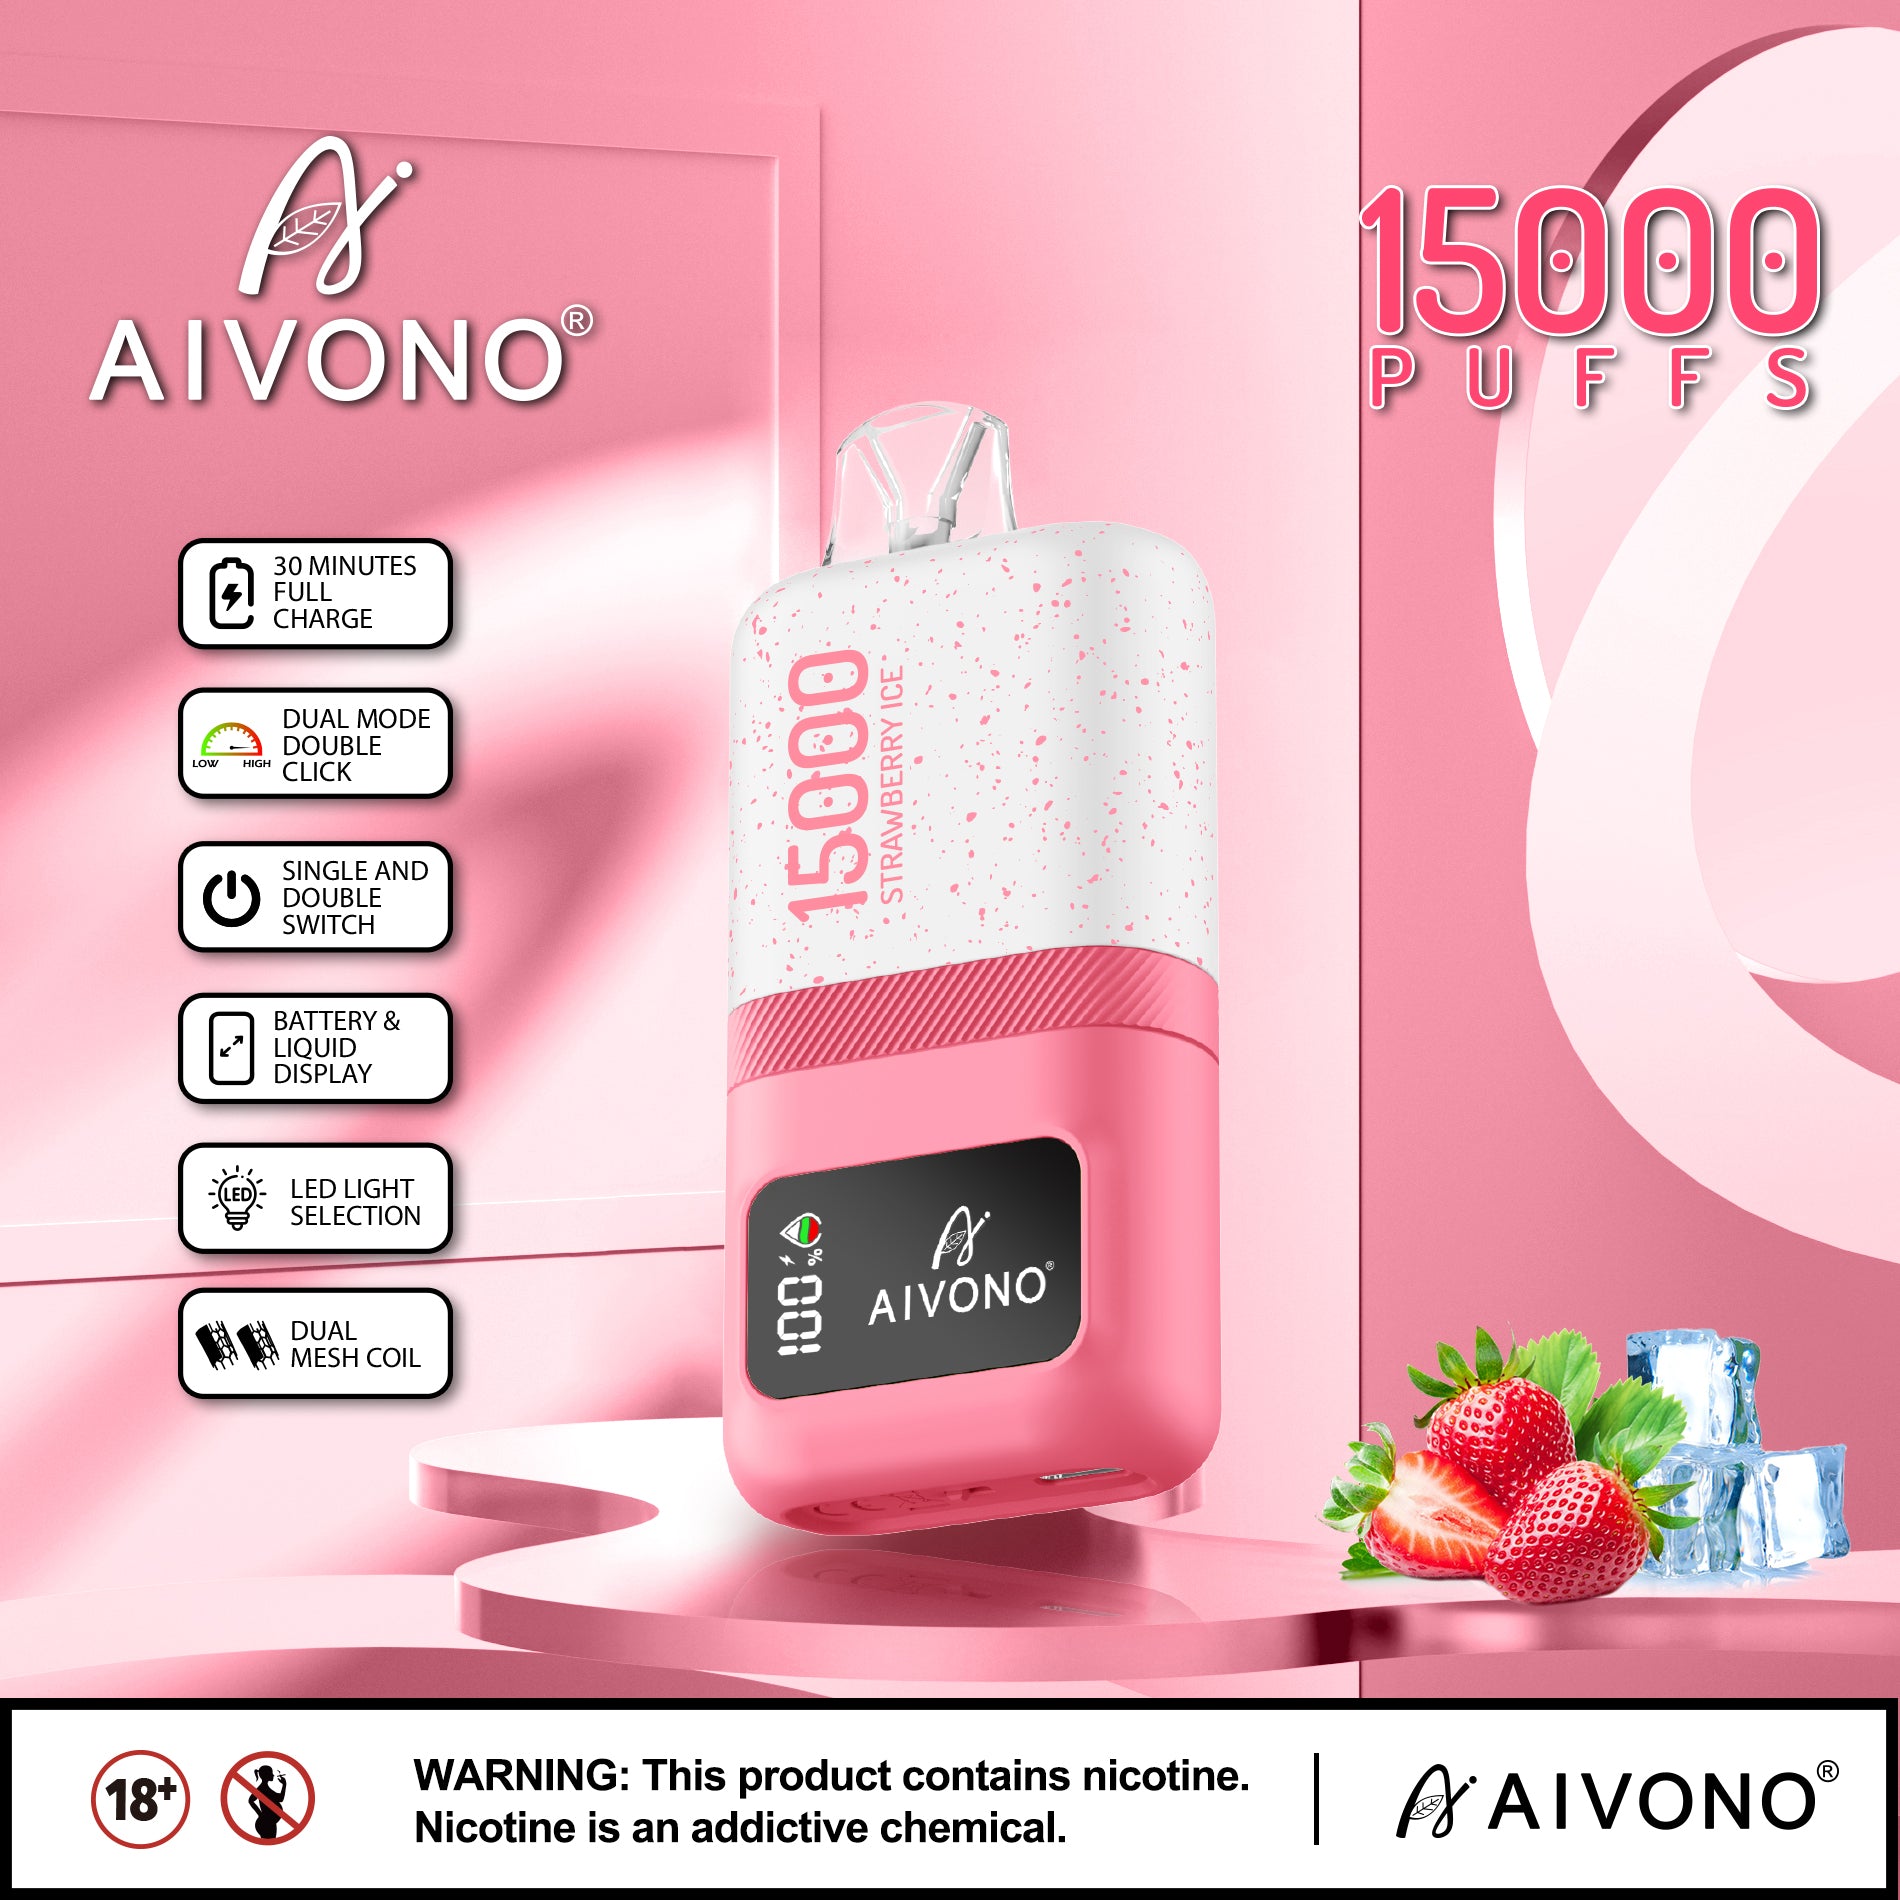 AIVONO MAGIC 15000 Puffs Disposable Vape Wholesale - Vapz Vape Wholesale